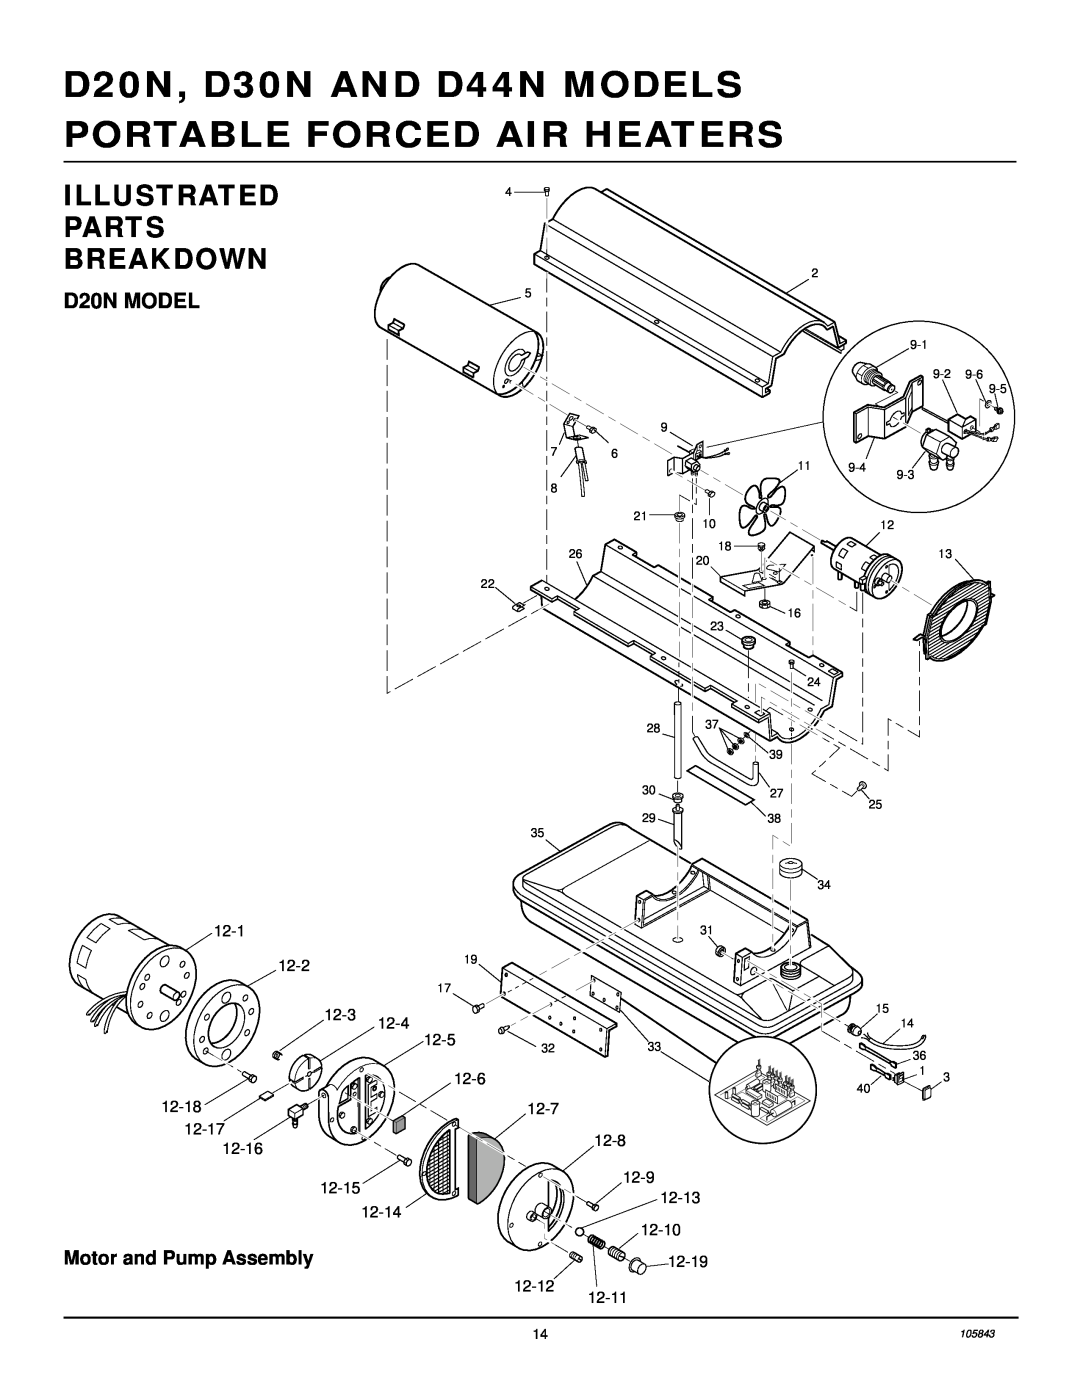 Desa D30N, D44N owner manual Illustrated Parts Breakdown, D20N MODEL 